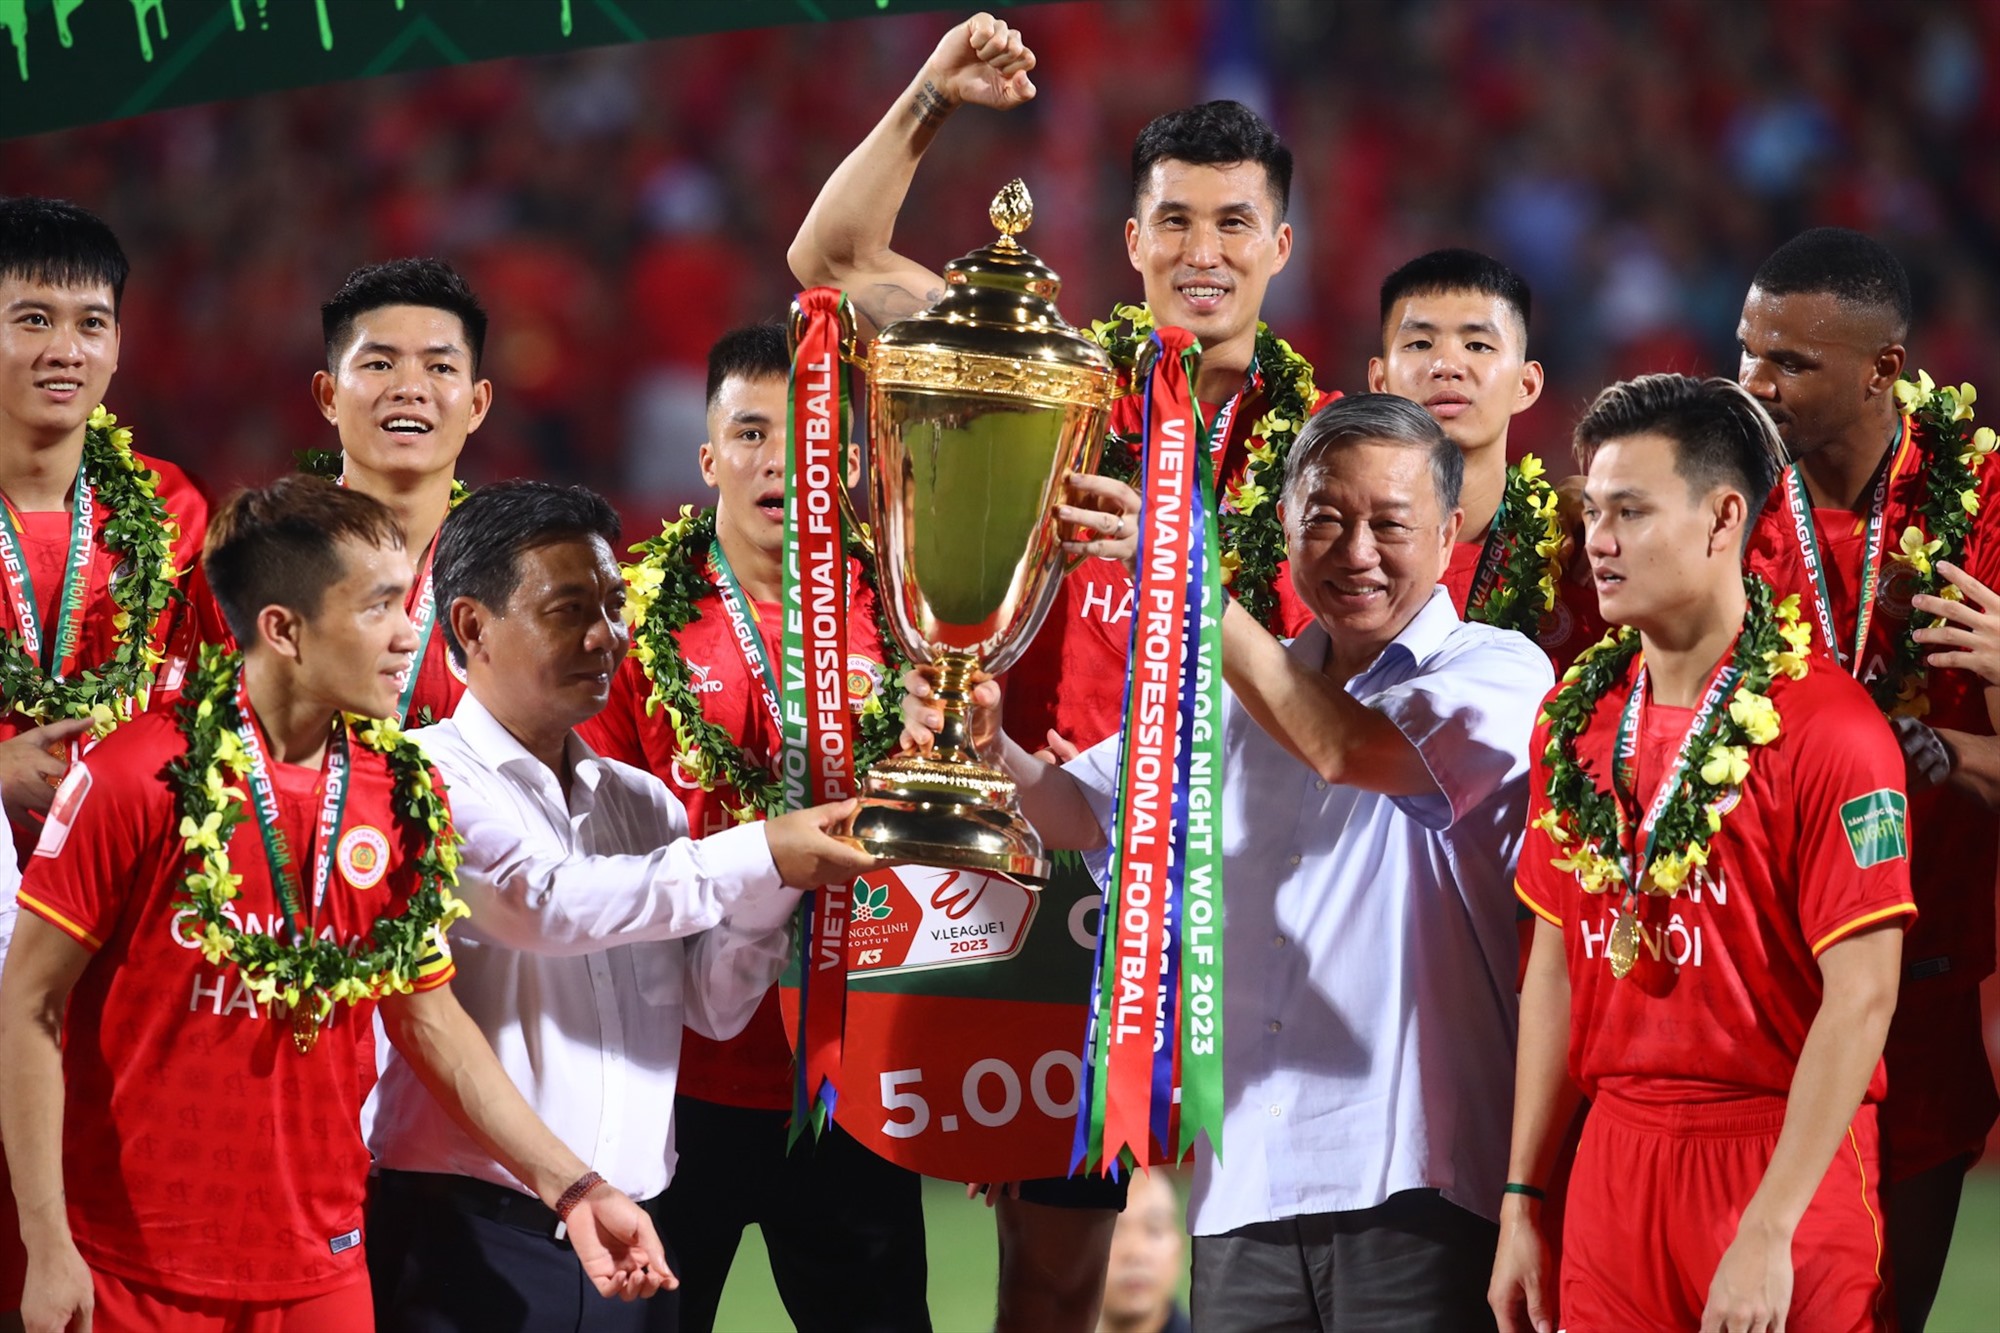 Đại tướng Tô Lâm - Ủy viên Bộ Chính trị, Bộ trưởng Bộ Công an trao cúp vô địch cho các cầu thủ.   